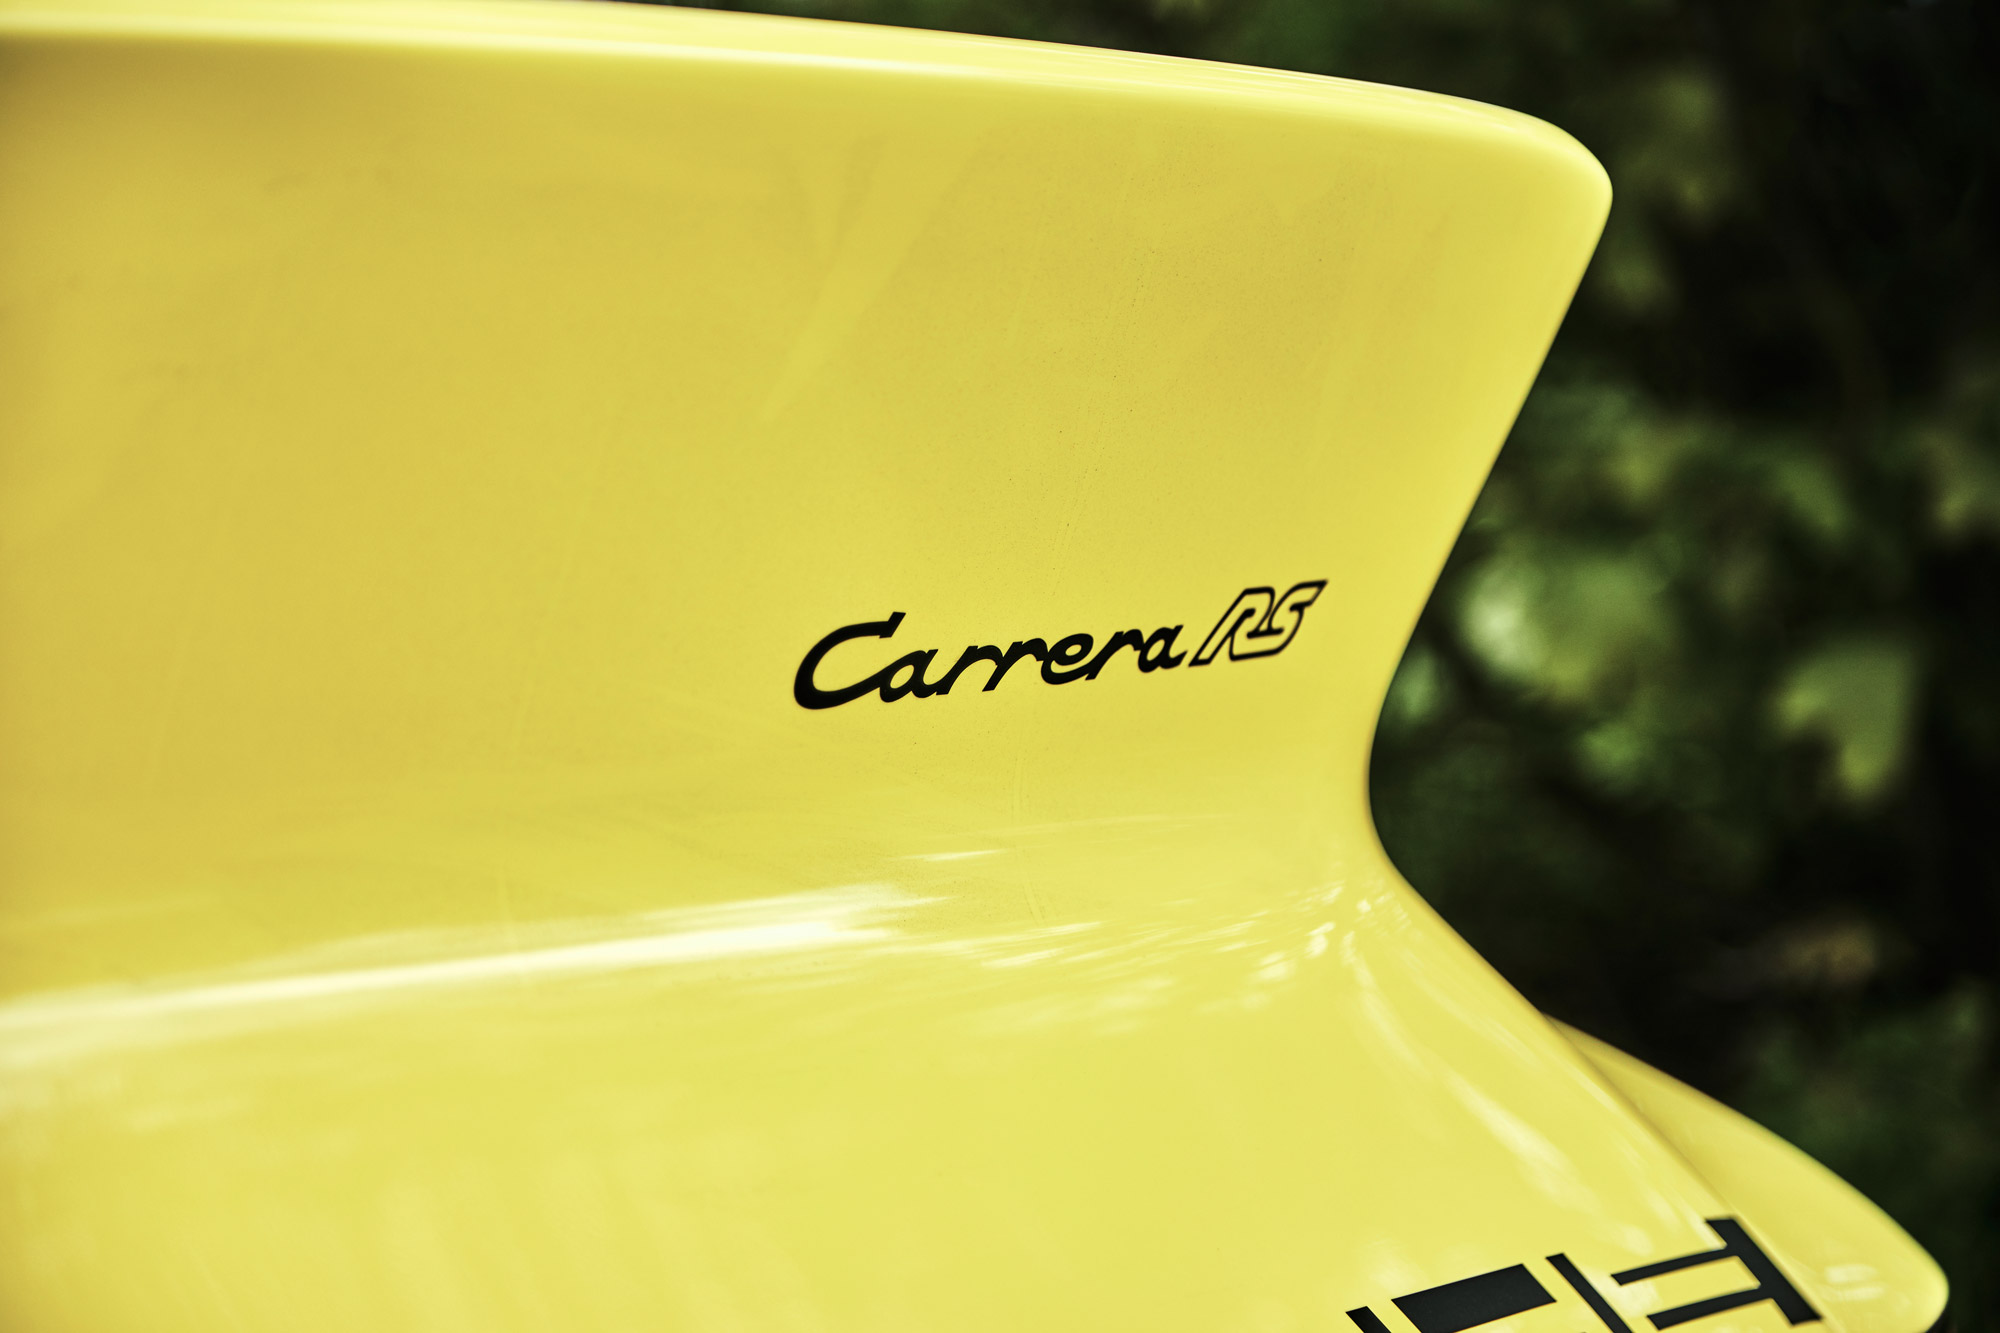 Carrera RS rear spoiler